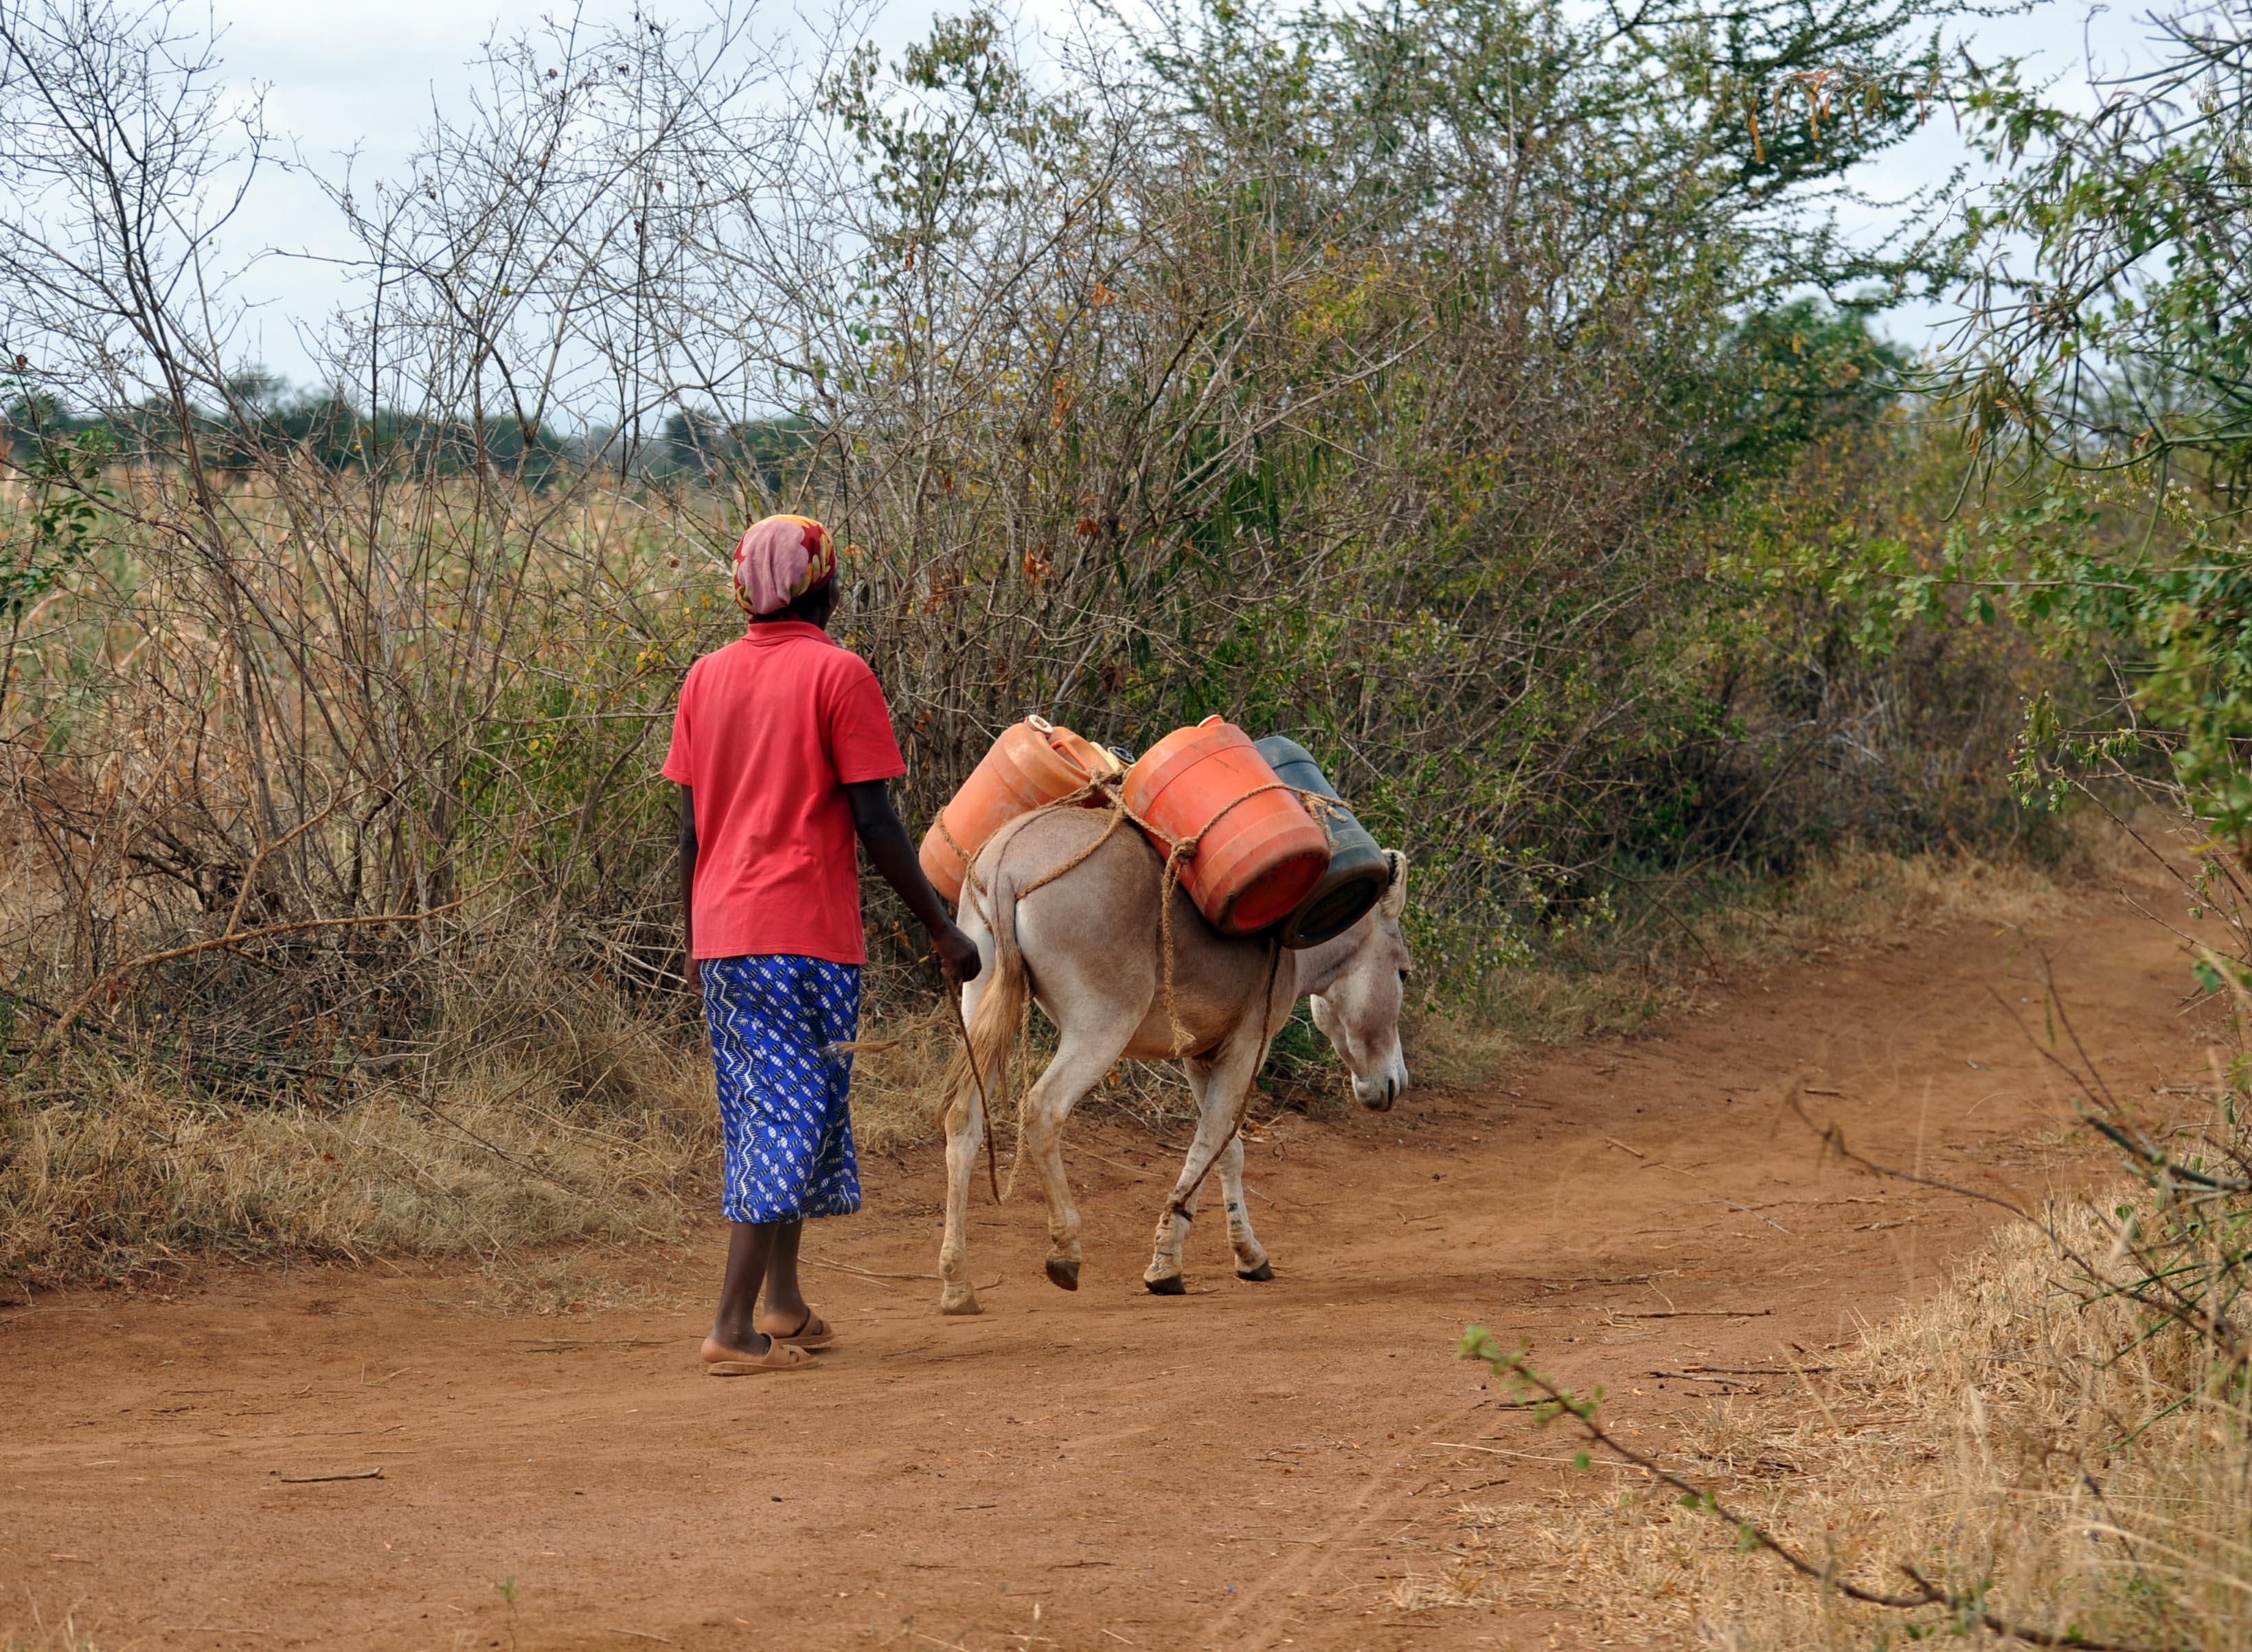 Along the way to Nyumbani Village